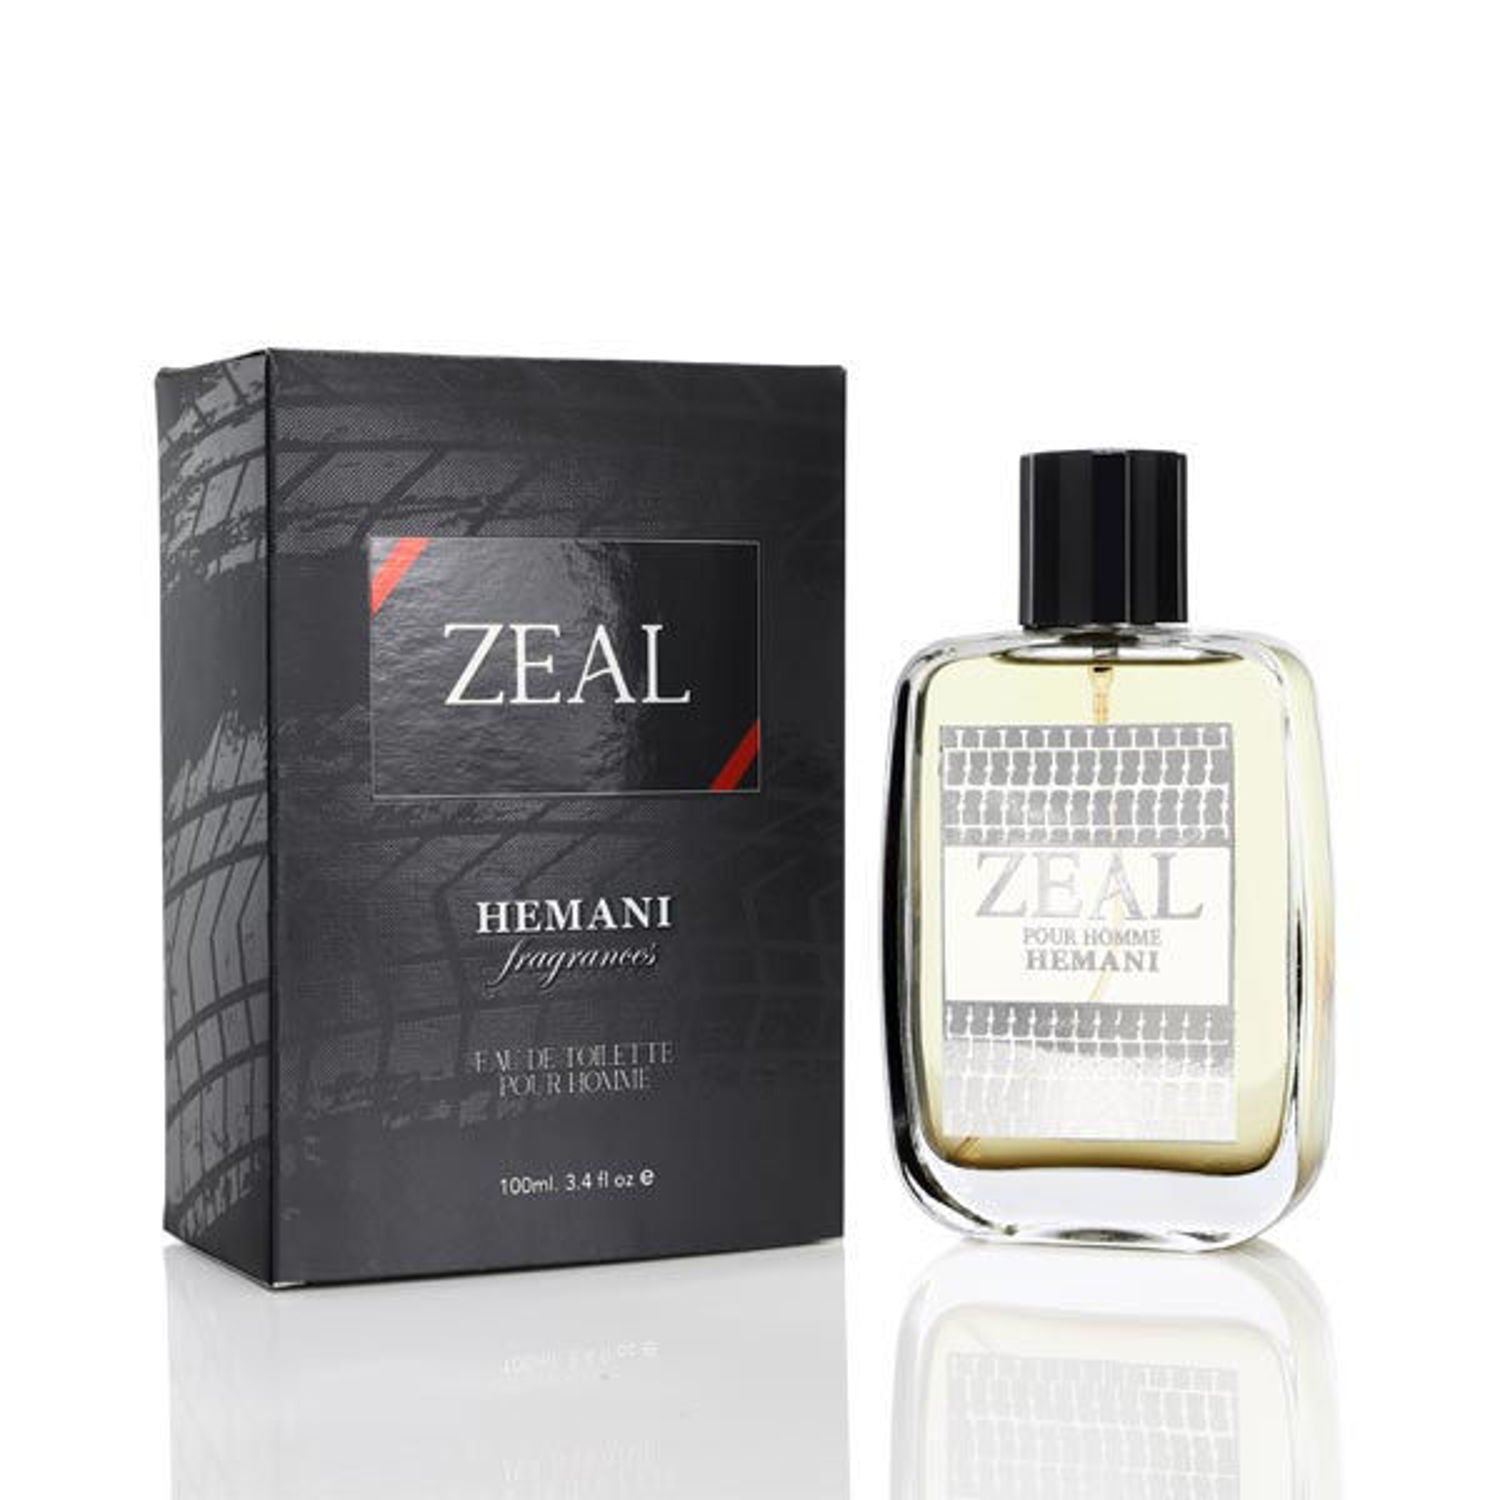 Hemani Zeal Perfume 100ml